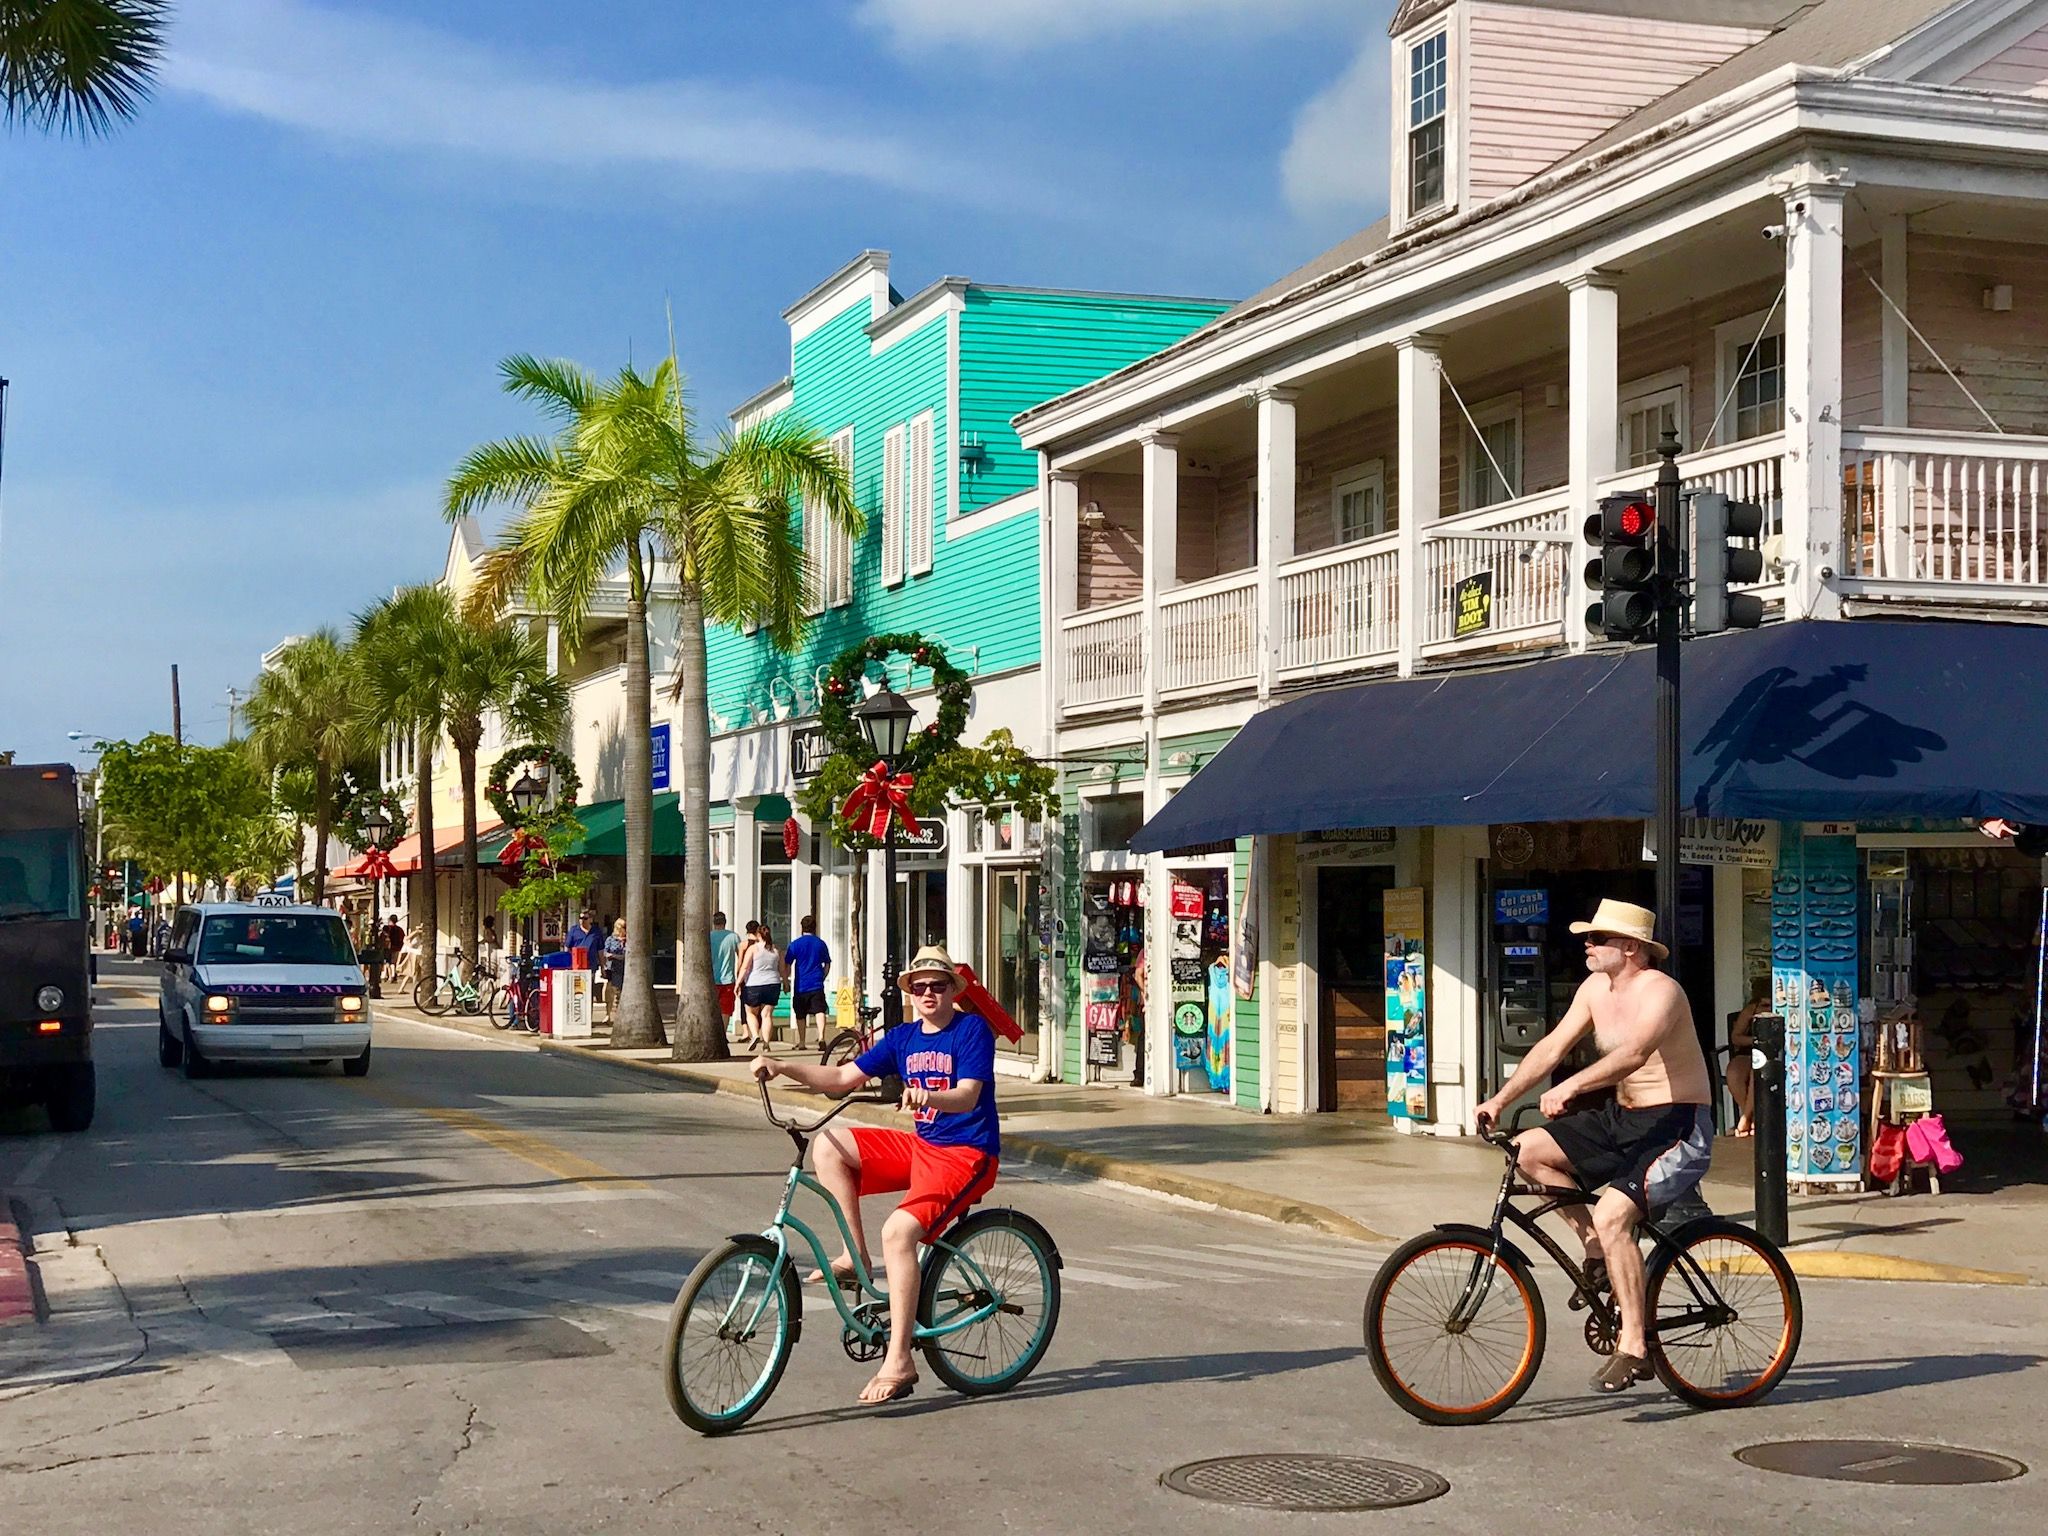 Florida Keys en automne : une destination ensoleillée parfaite à partir de novembre ! Photo : Sascha Tegtmeyer 5. La Floride - une destination chaleureuse en octobre et novembre ?